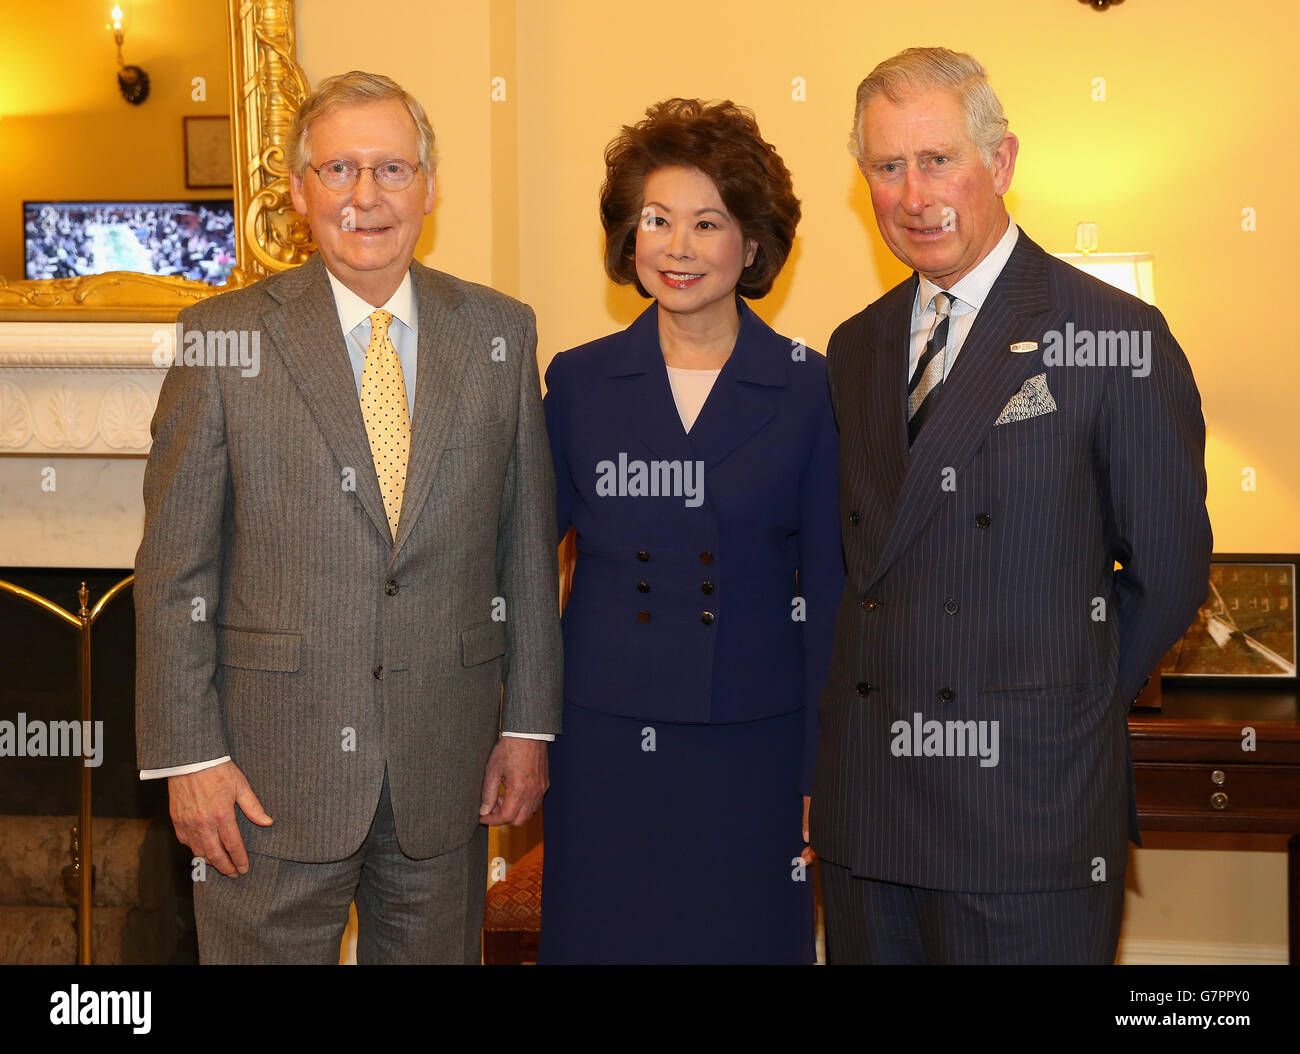 Le Prince de Galles avec le chef du Sénat Mitch McConnell et sa femme Elaine Chao dans le bâtiment du Capitole dans le cadre de son voyage à Washington DC, États-Unis. Banque D'Images